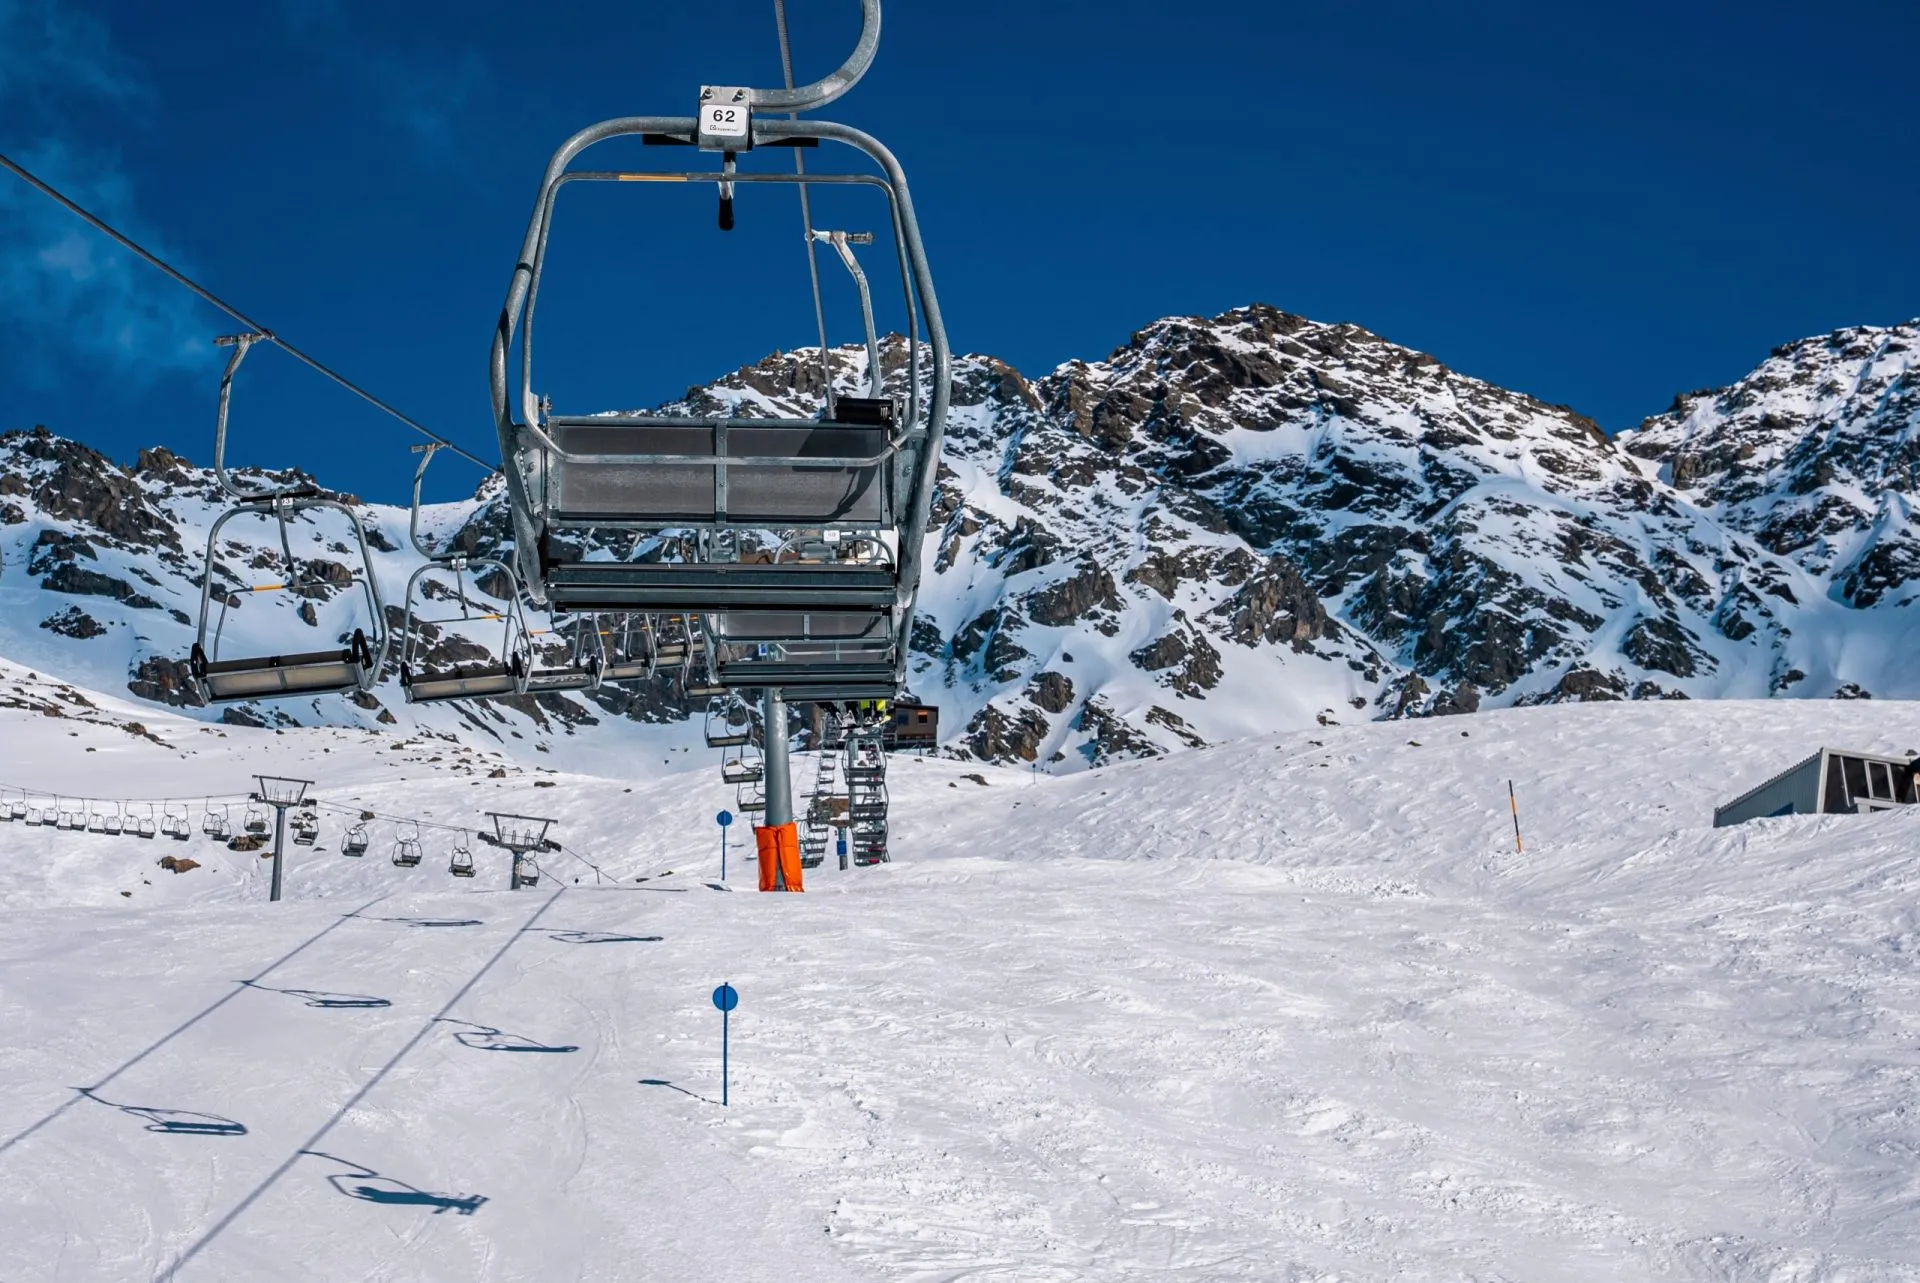 Tyhjät tuolihissit hiihtokeskuksessa lumihuippuisia vuoria vastaan aurinkoisena päivänä